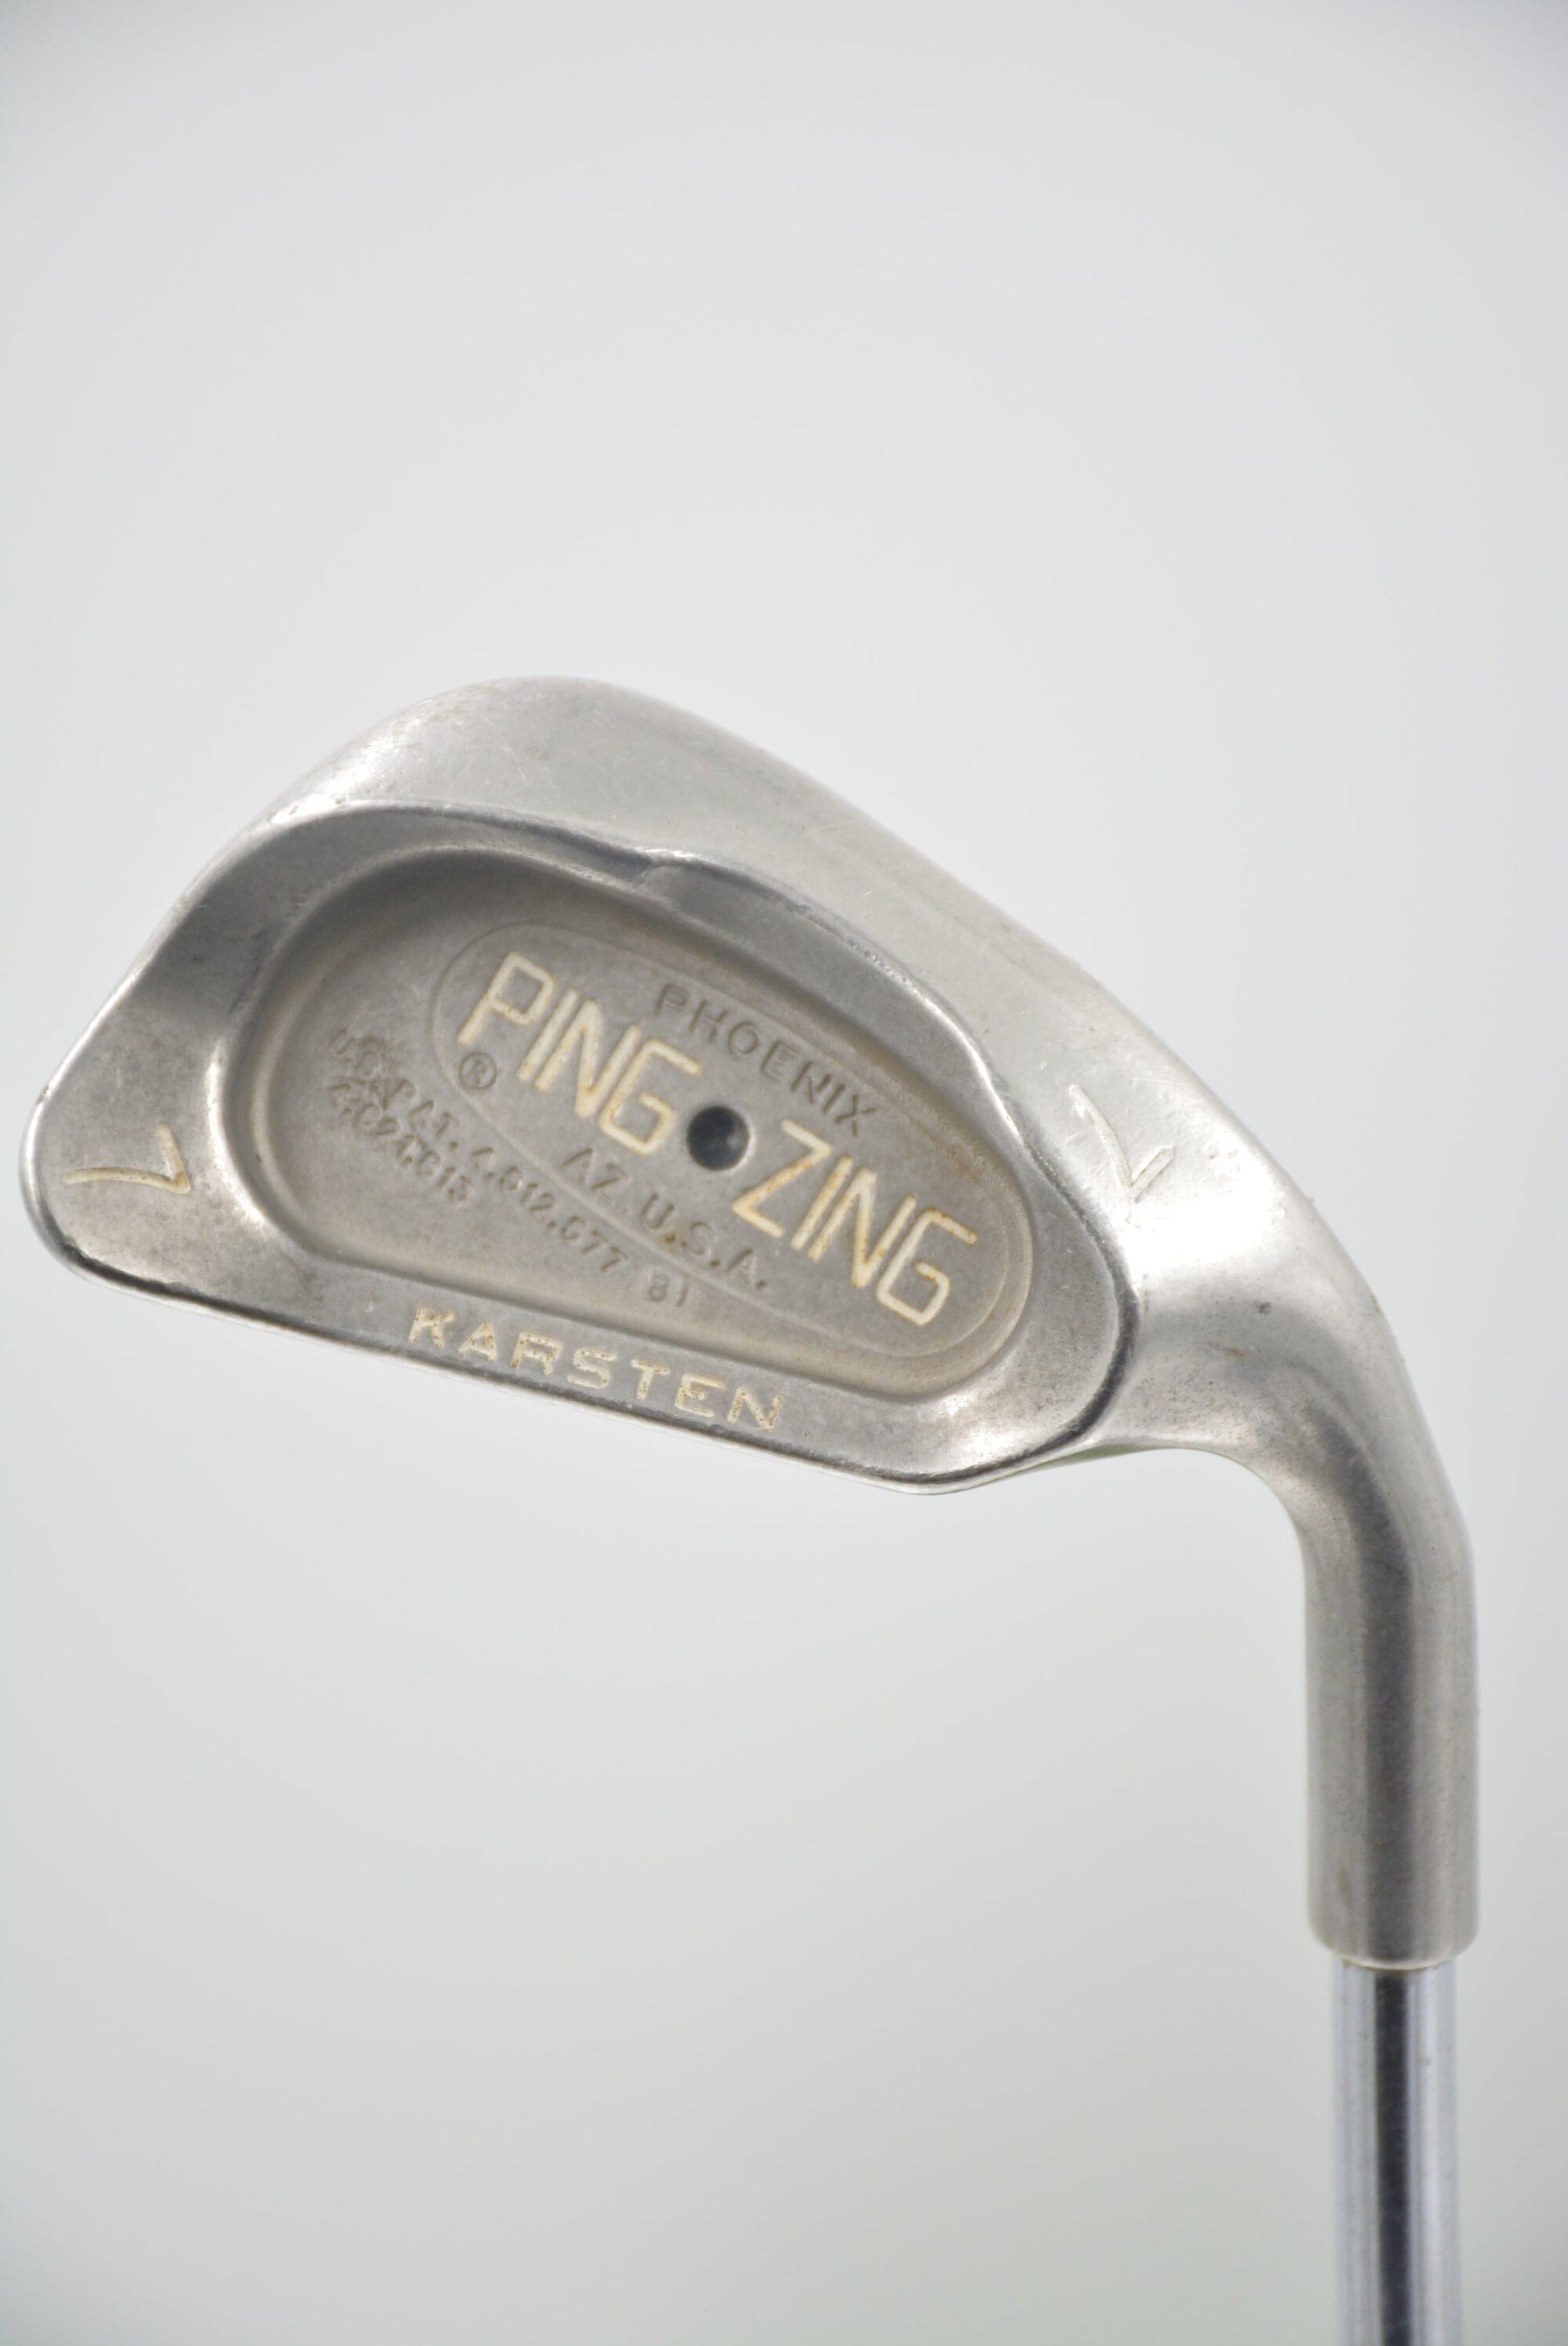 Ping Zing Karsten 7 Iron S Flex Golf Clubs GolfRoots 